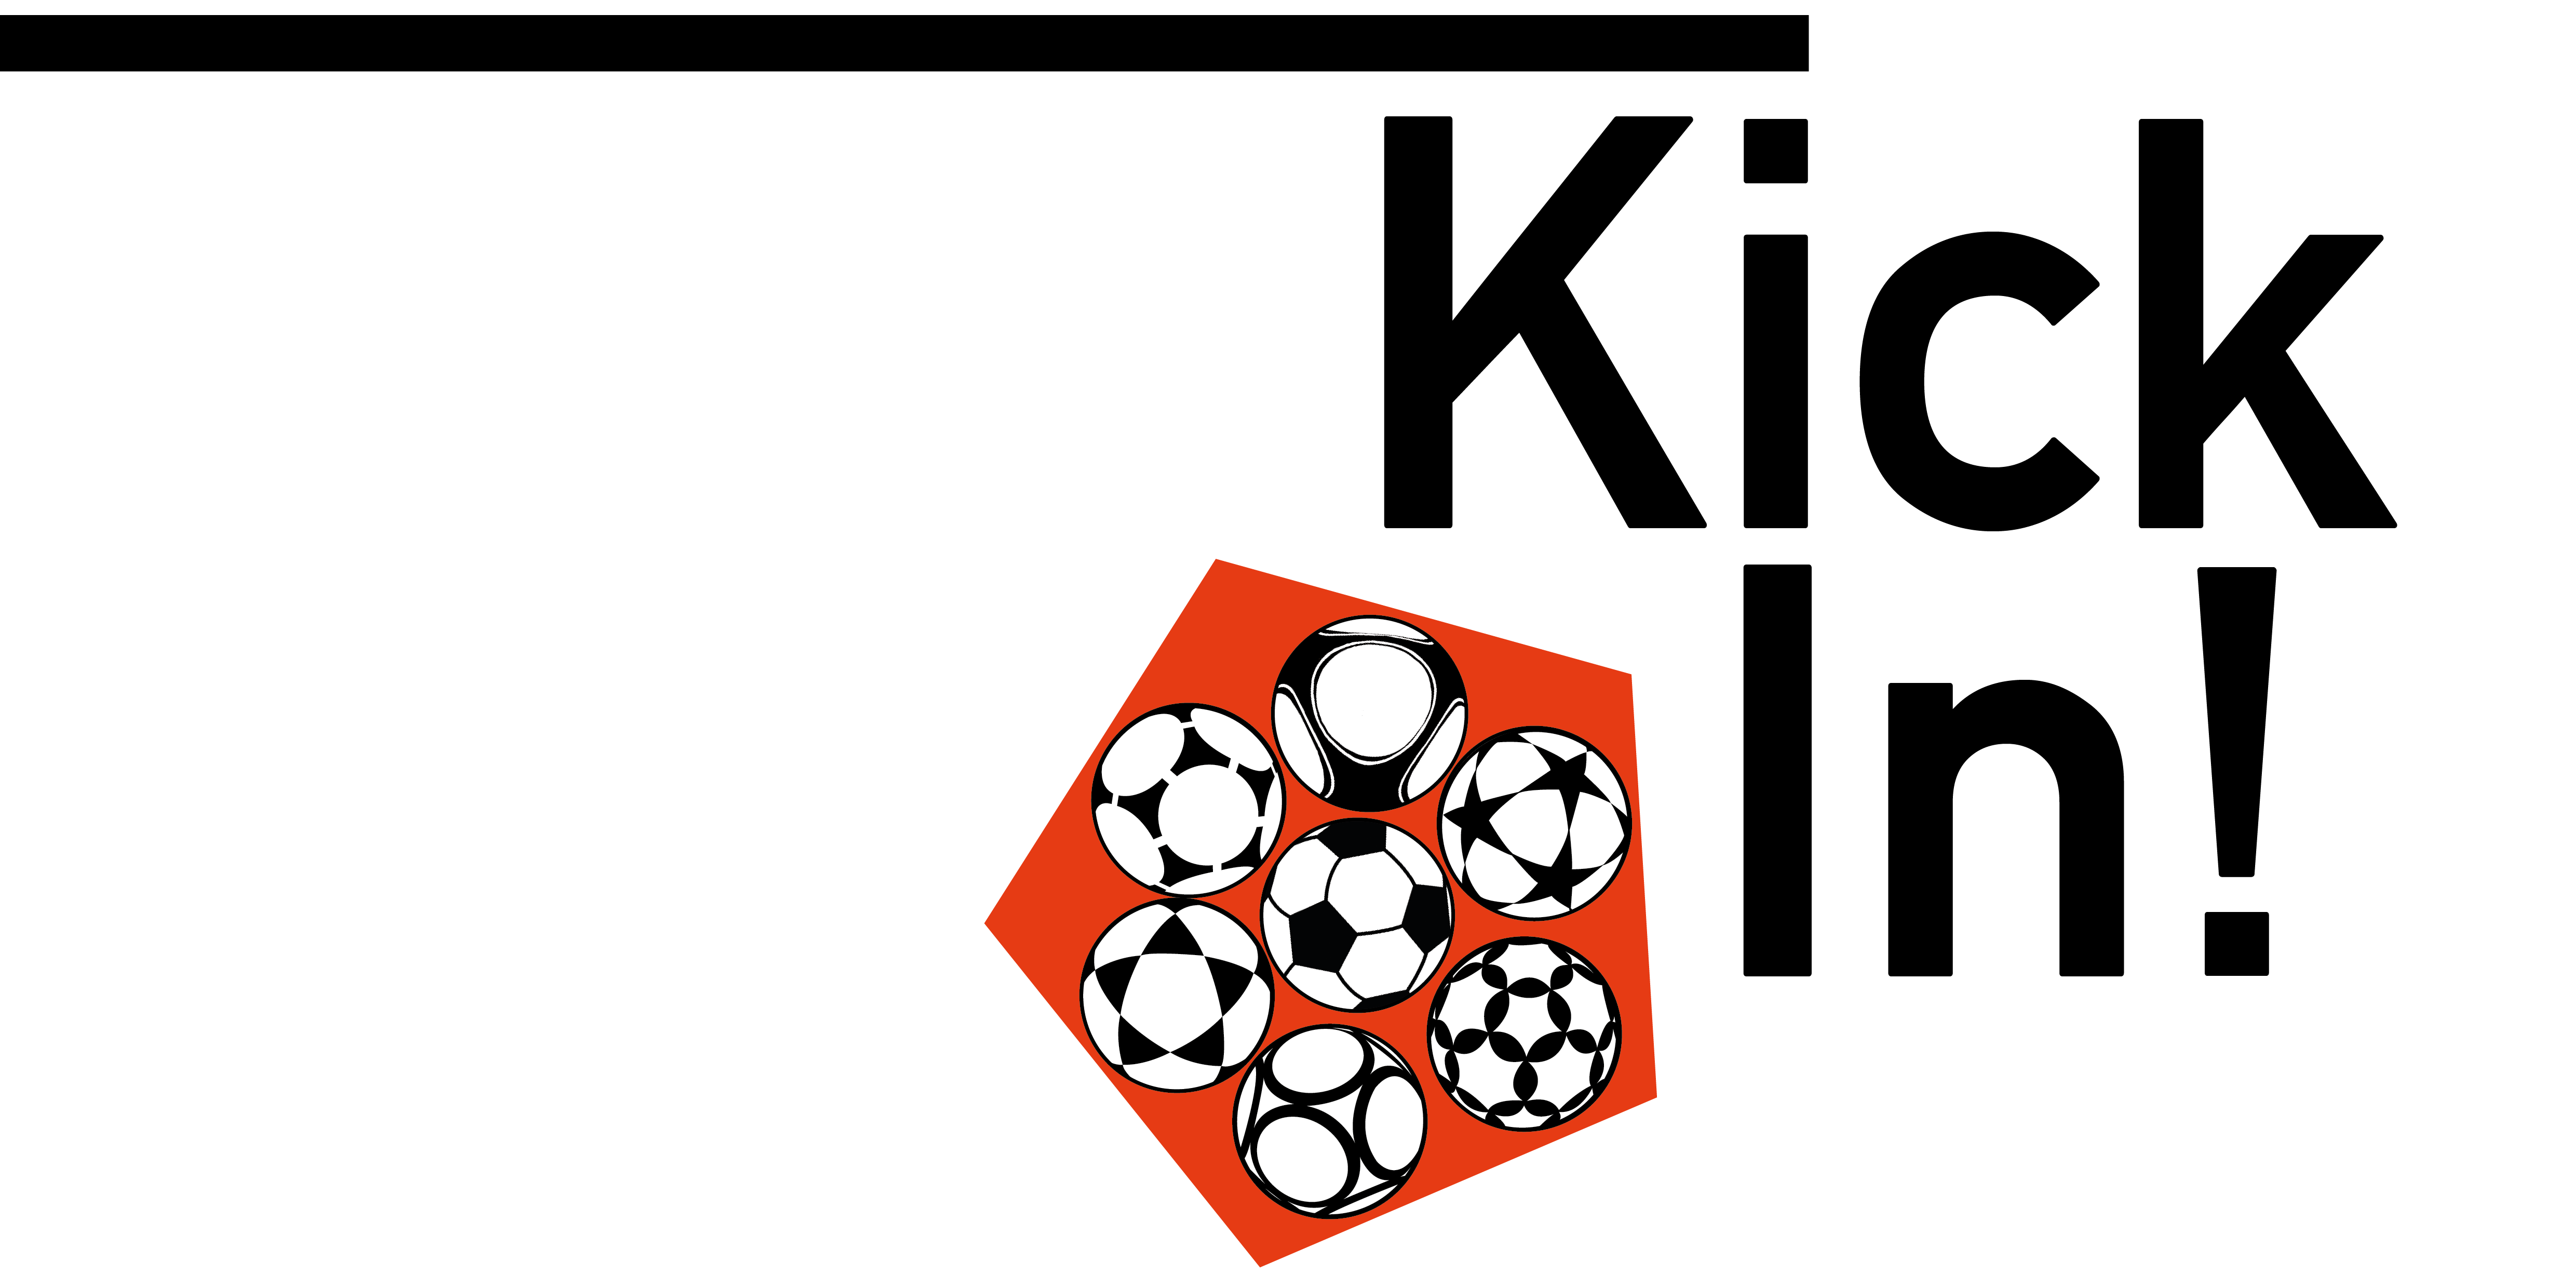 Logo von KickIn! – ein schwarzer horizontaler Stich, am rechten Ende darunter der Schriftzug KickIn! in zwei Zeilen, links daneben ein rotes Fünfeck mit 7 verschiedenen Fußbällen in schwarz-weiß, darunter der Schriftzug „Beratungsstelle Inklusion im Fußball, ein Projekt der BBAG“